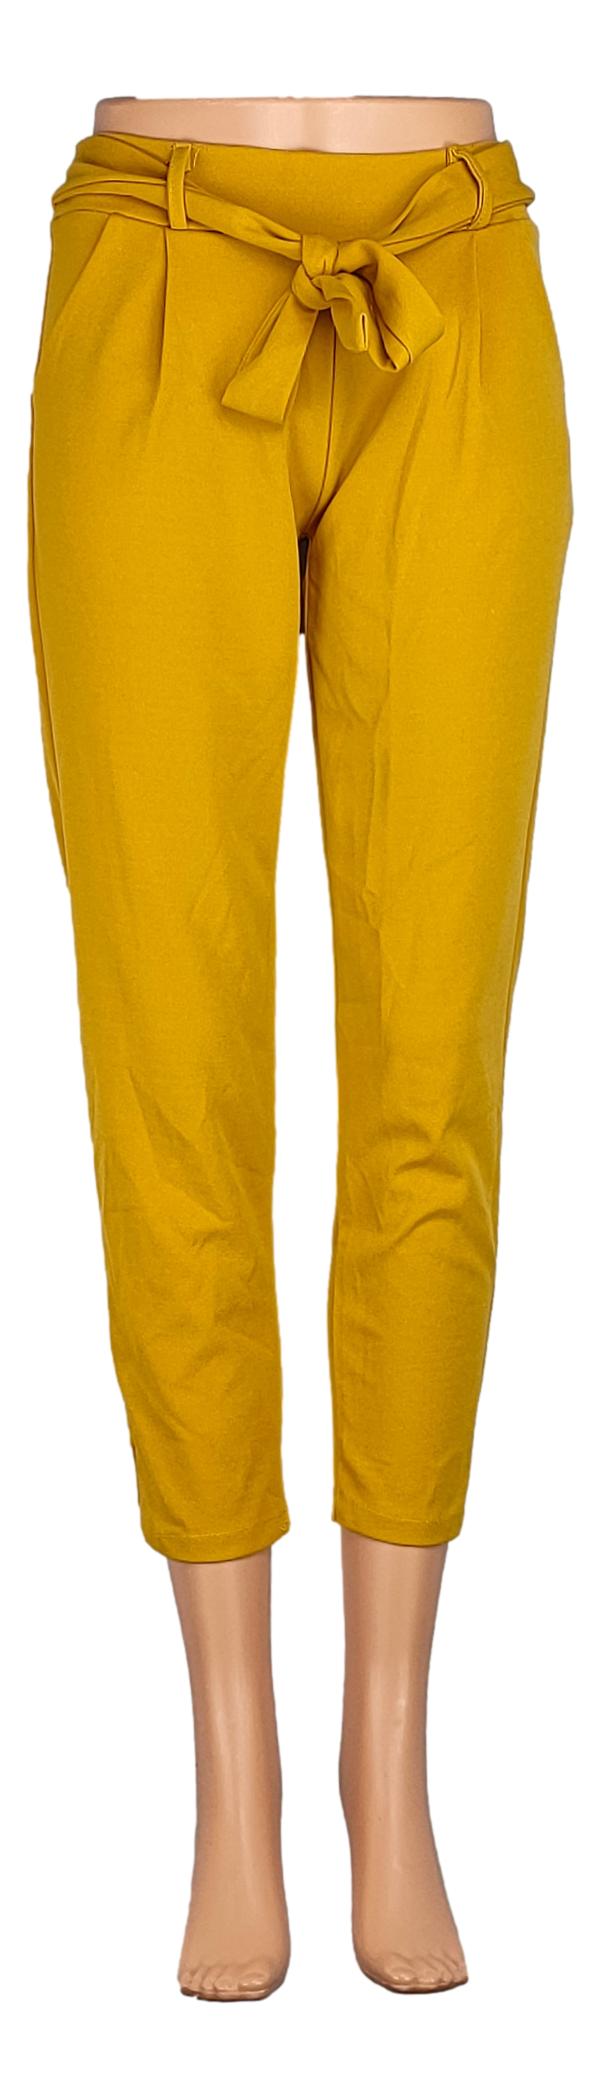 Pantalon Sans Marque -Taille 36